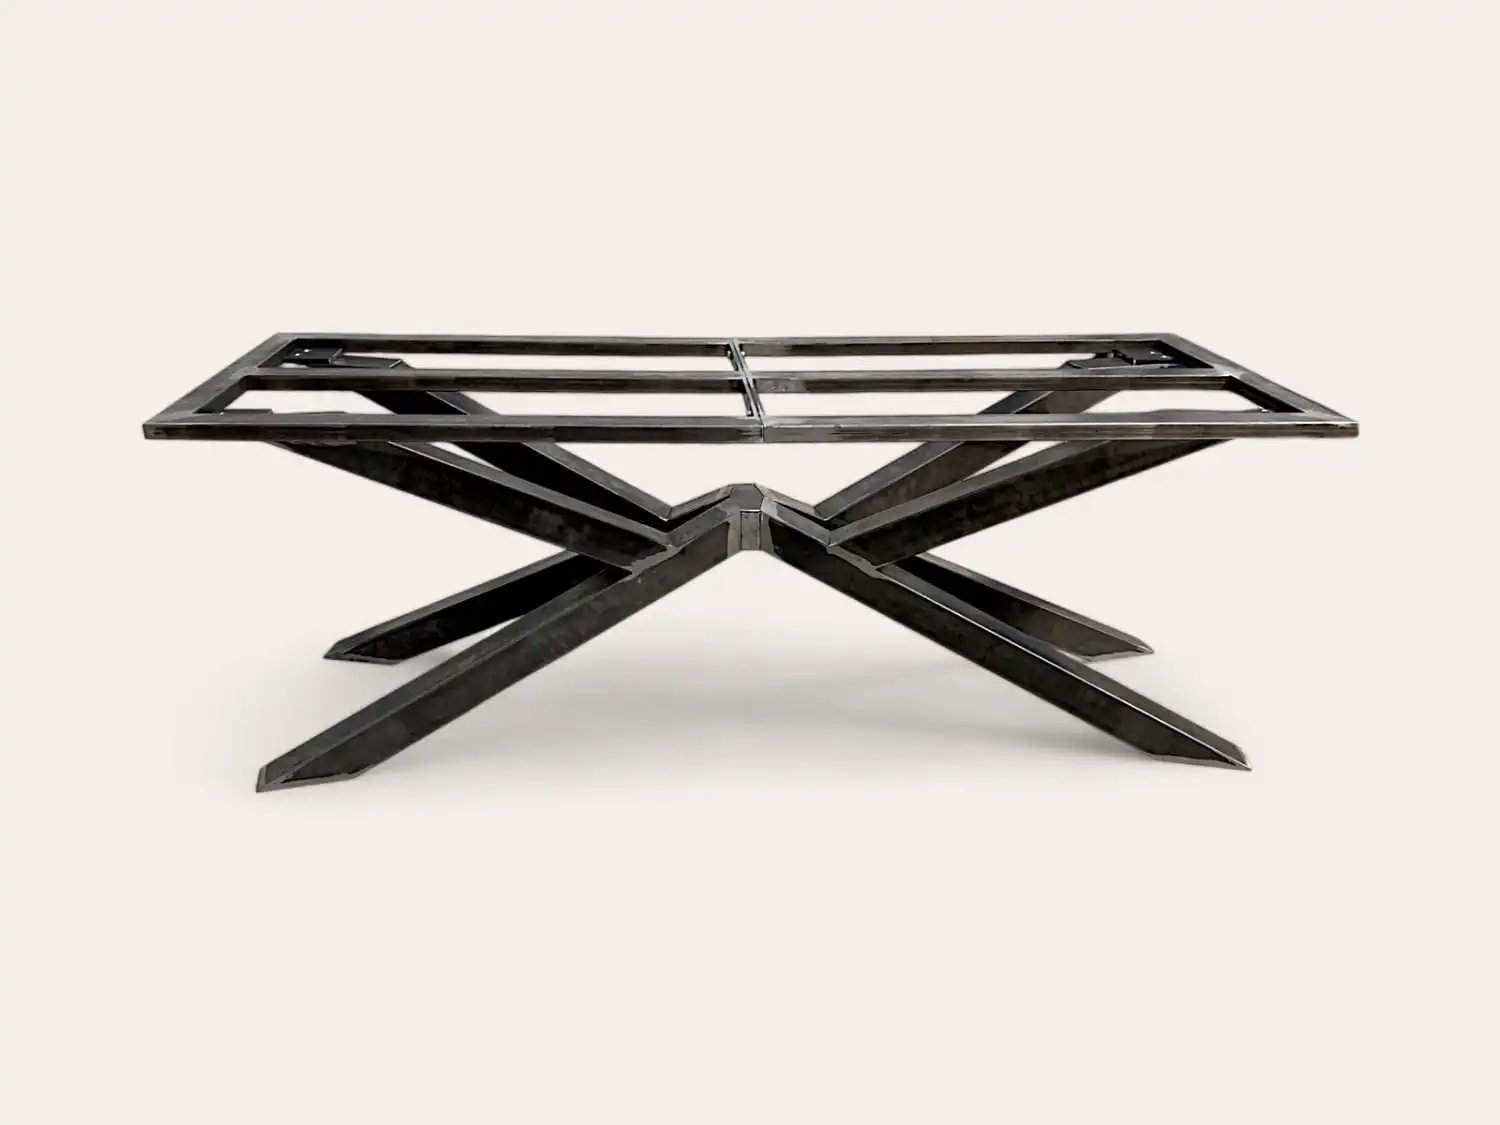 Un structure de table moderne en métal noir à structure en X sur fond neutre.